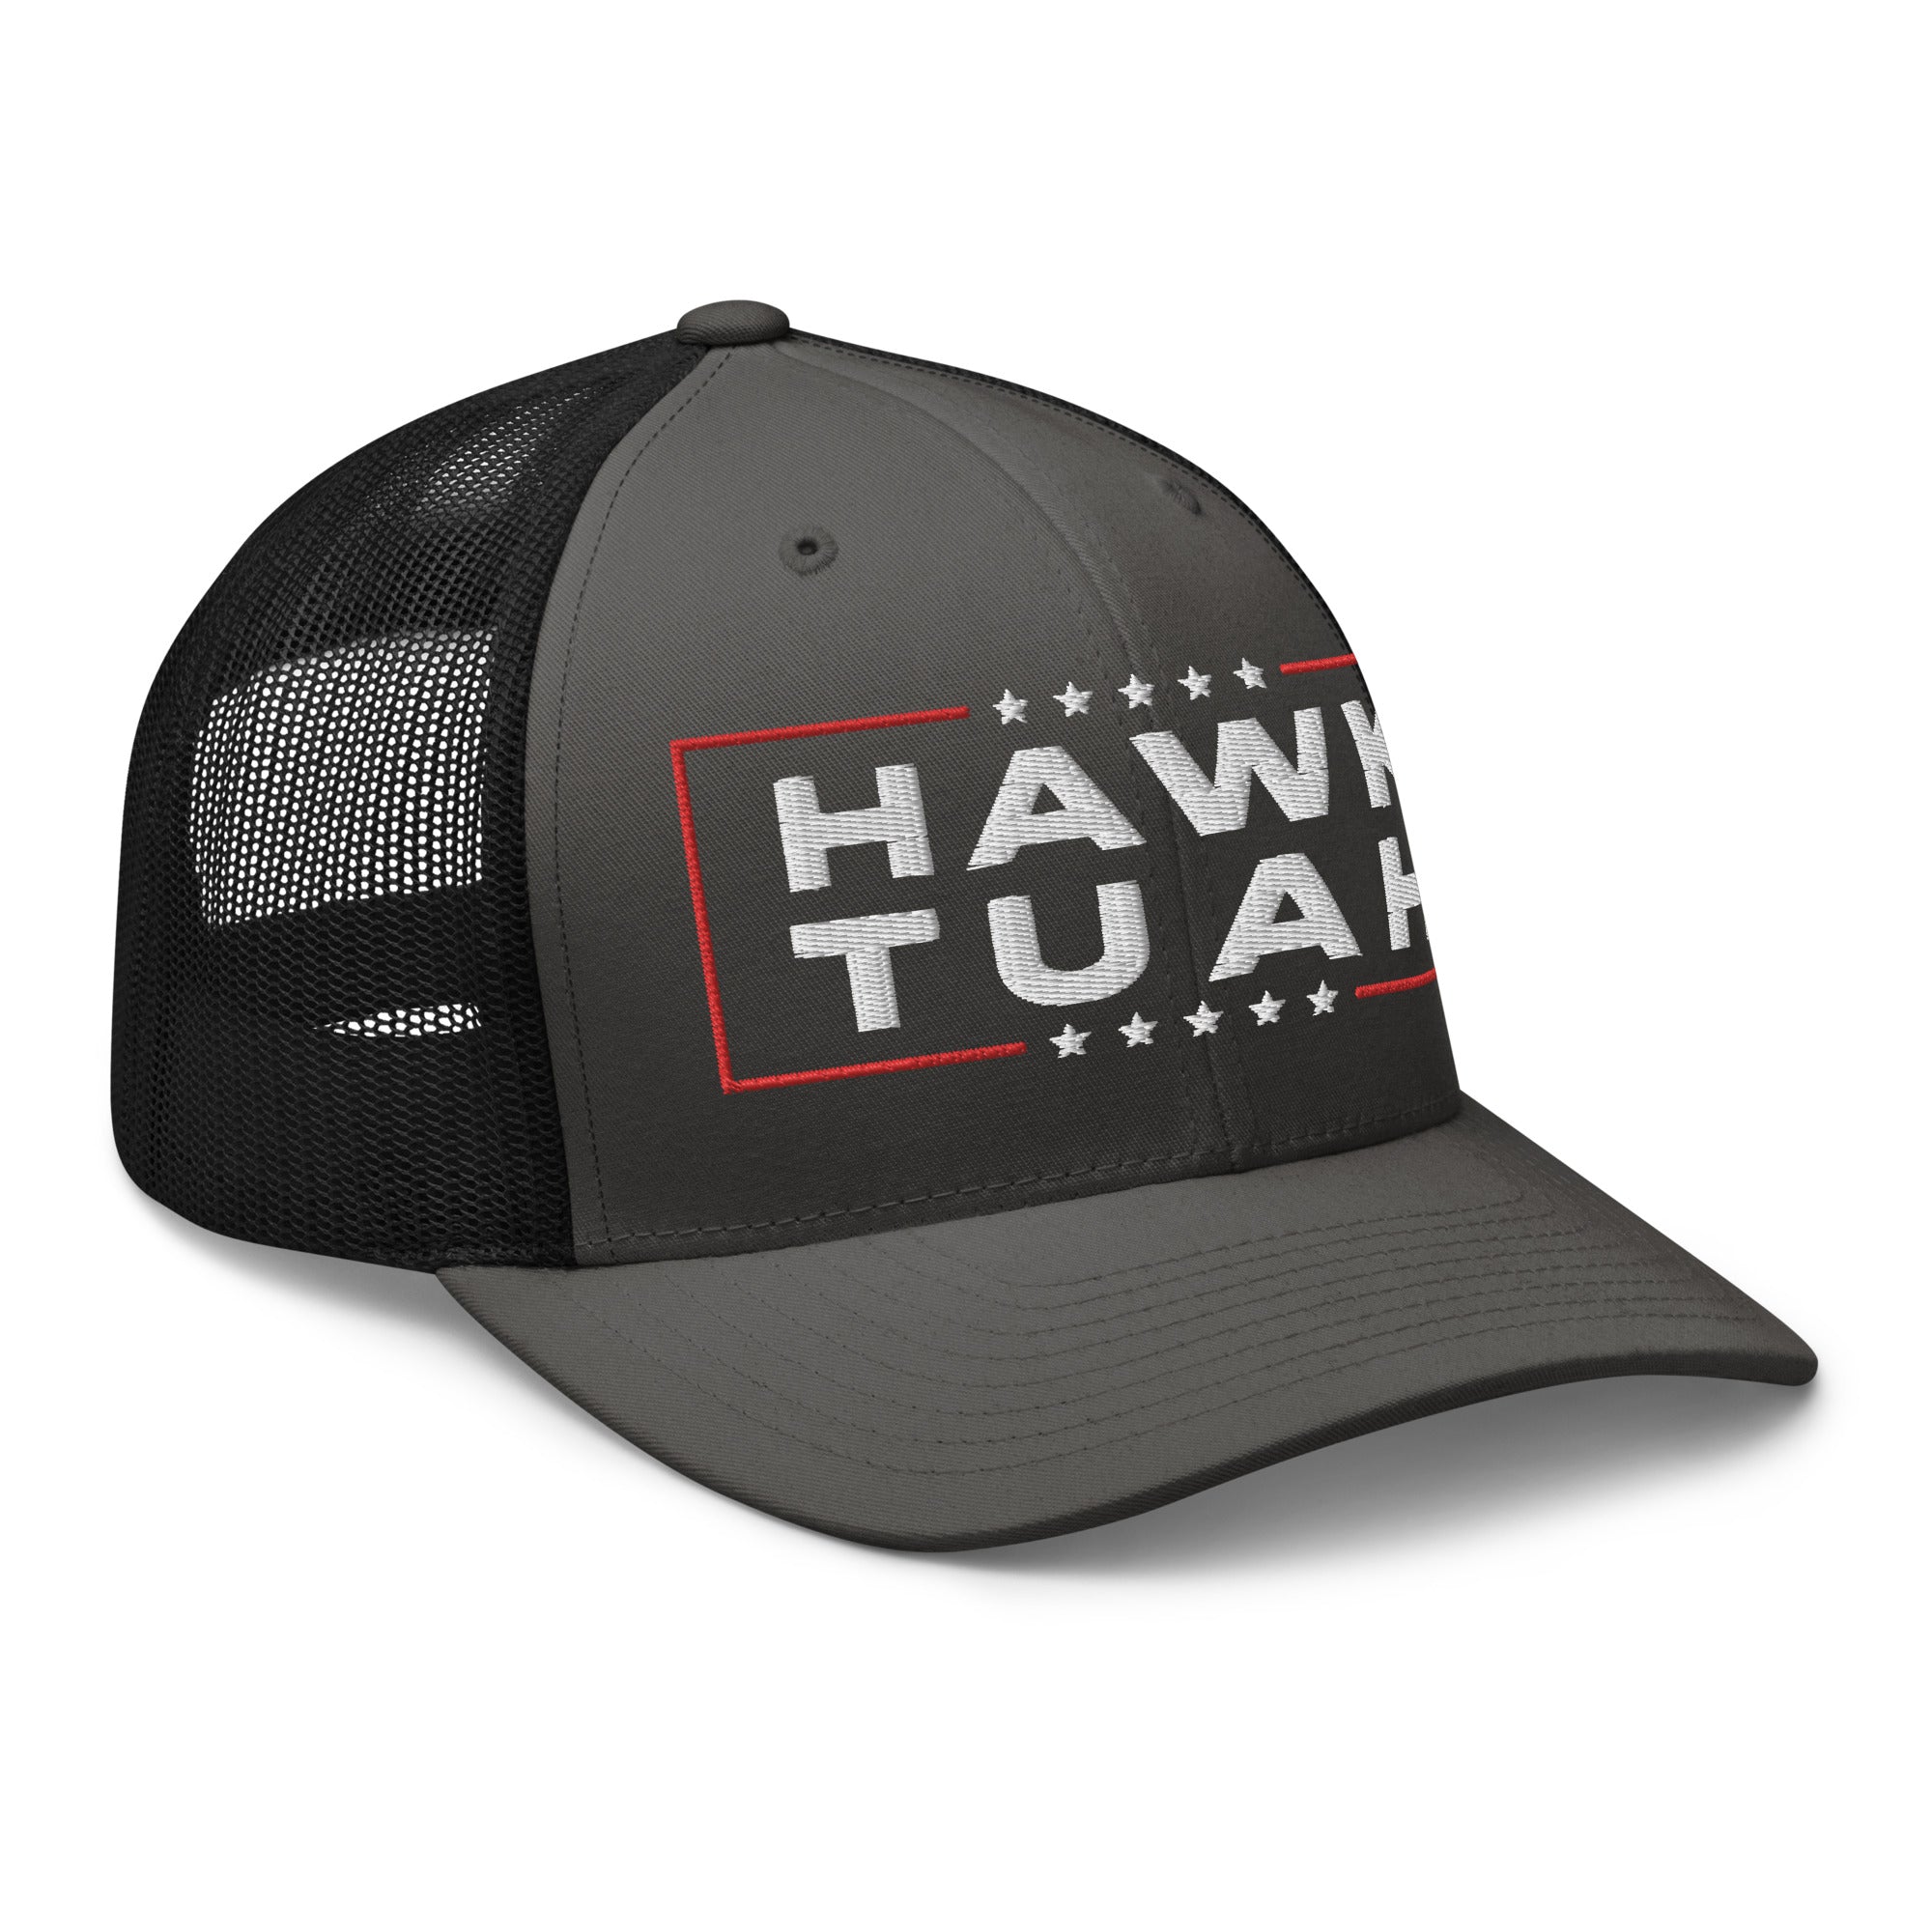 Hawk Tuah Trucker Cap